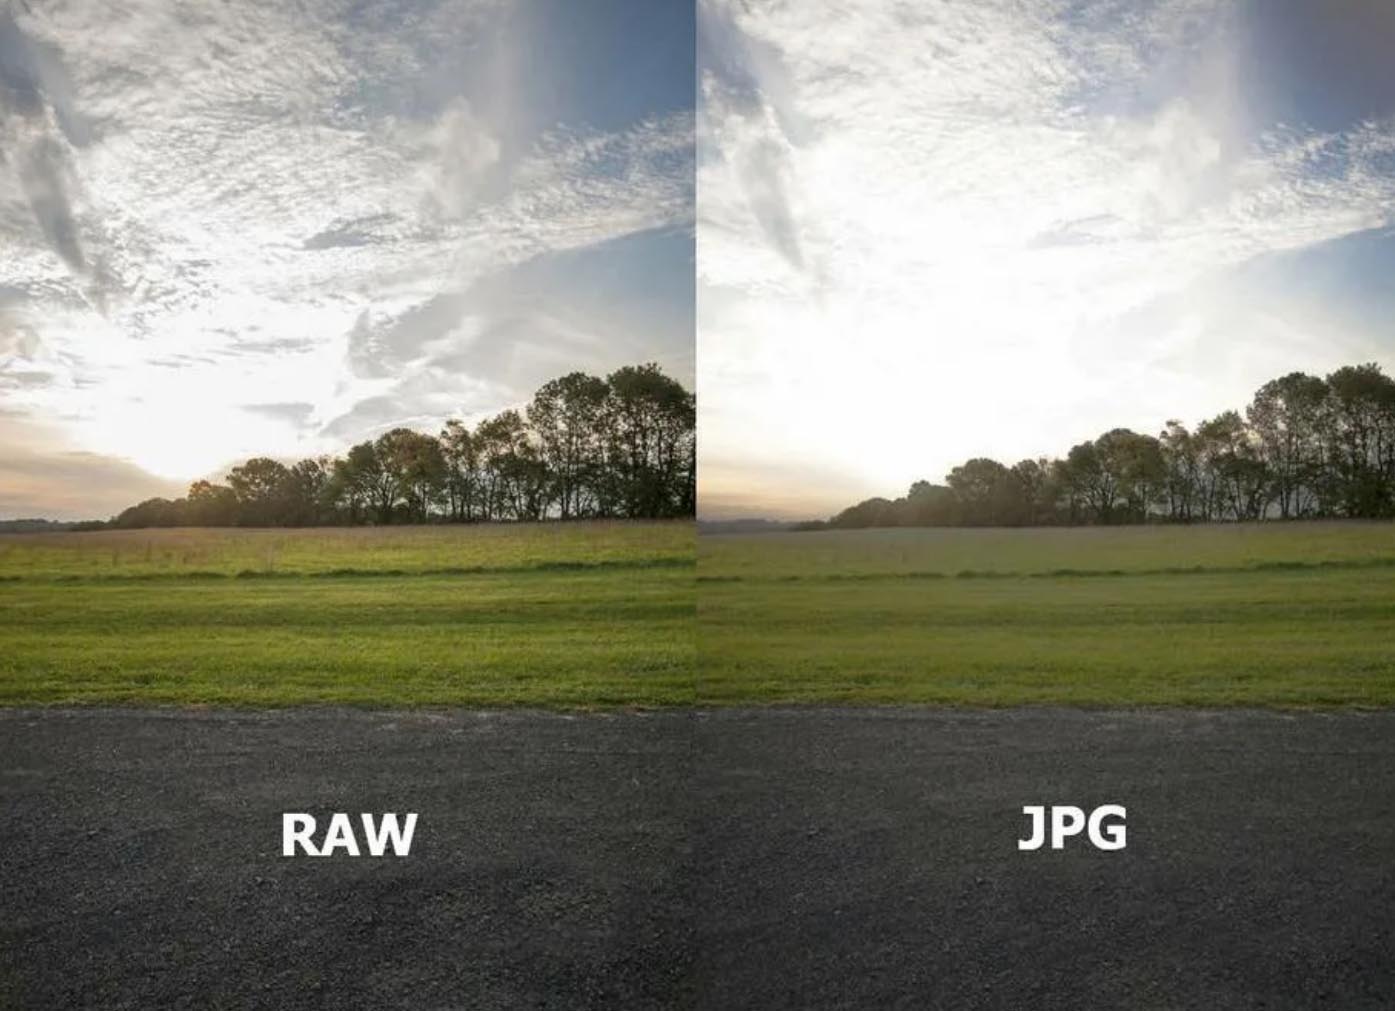 Равов. Raw Формат. Raw Формат изображения. Снимки в формате Raw. Raw jpeg разница.